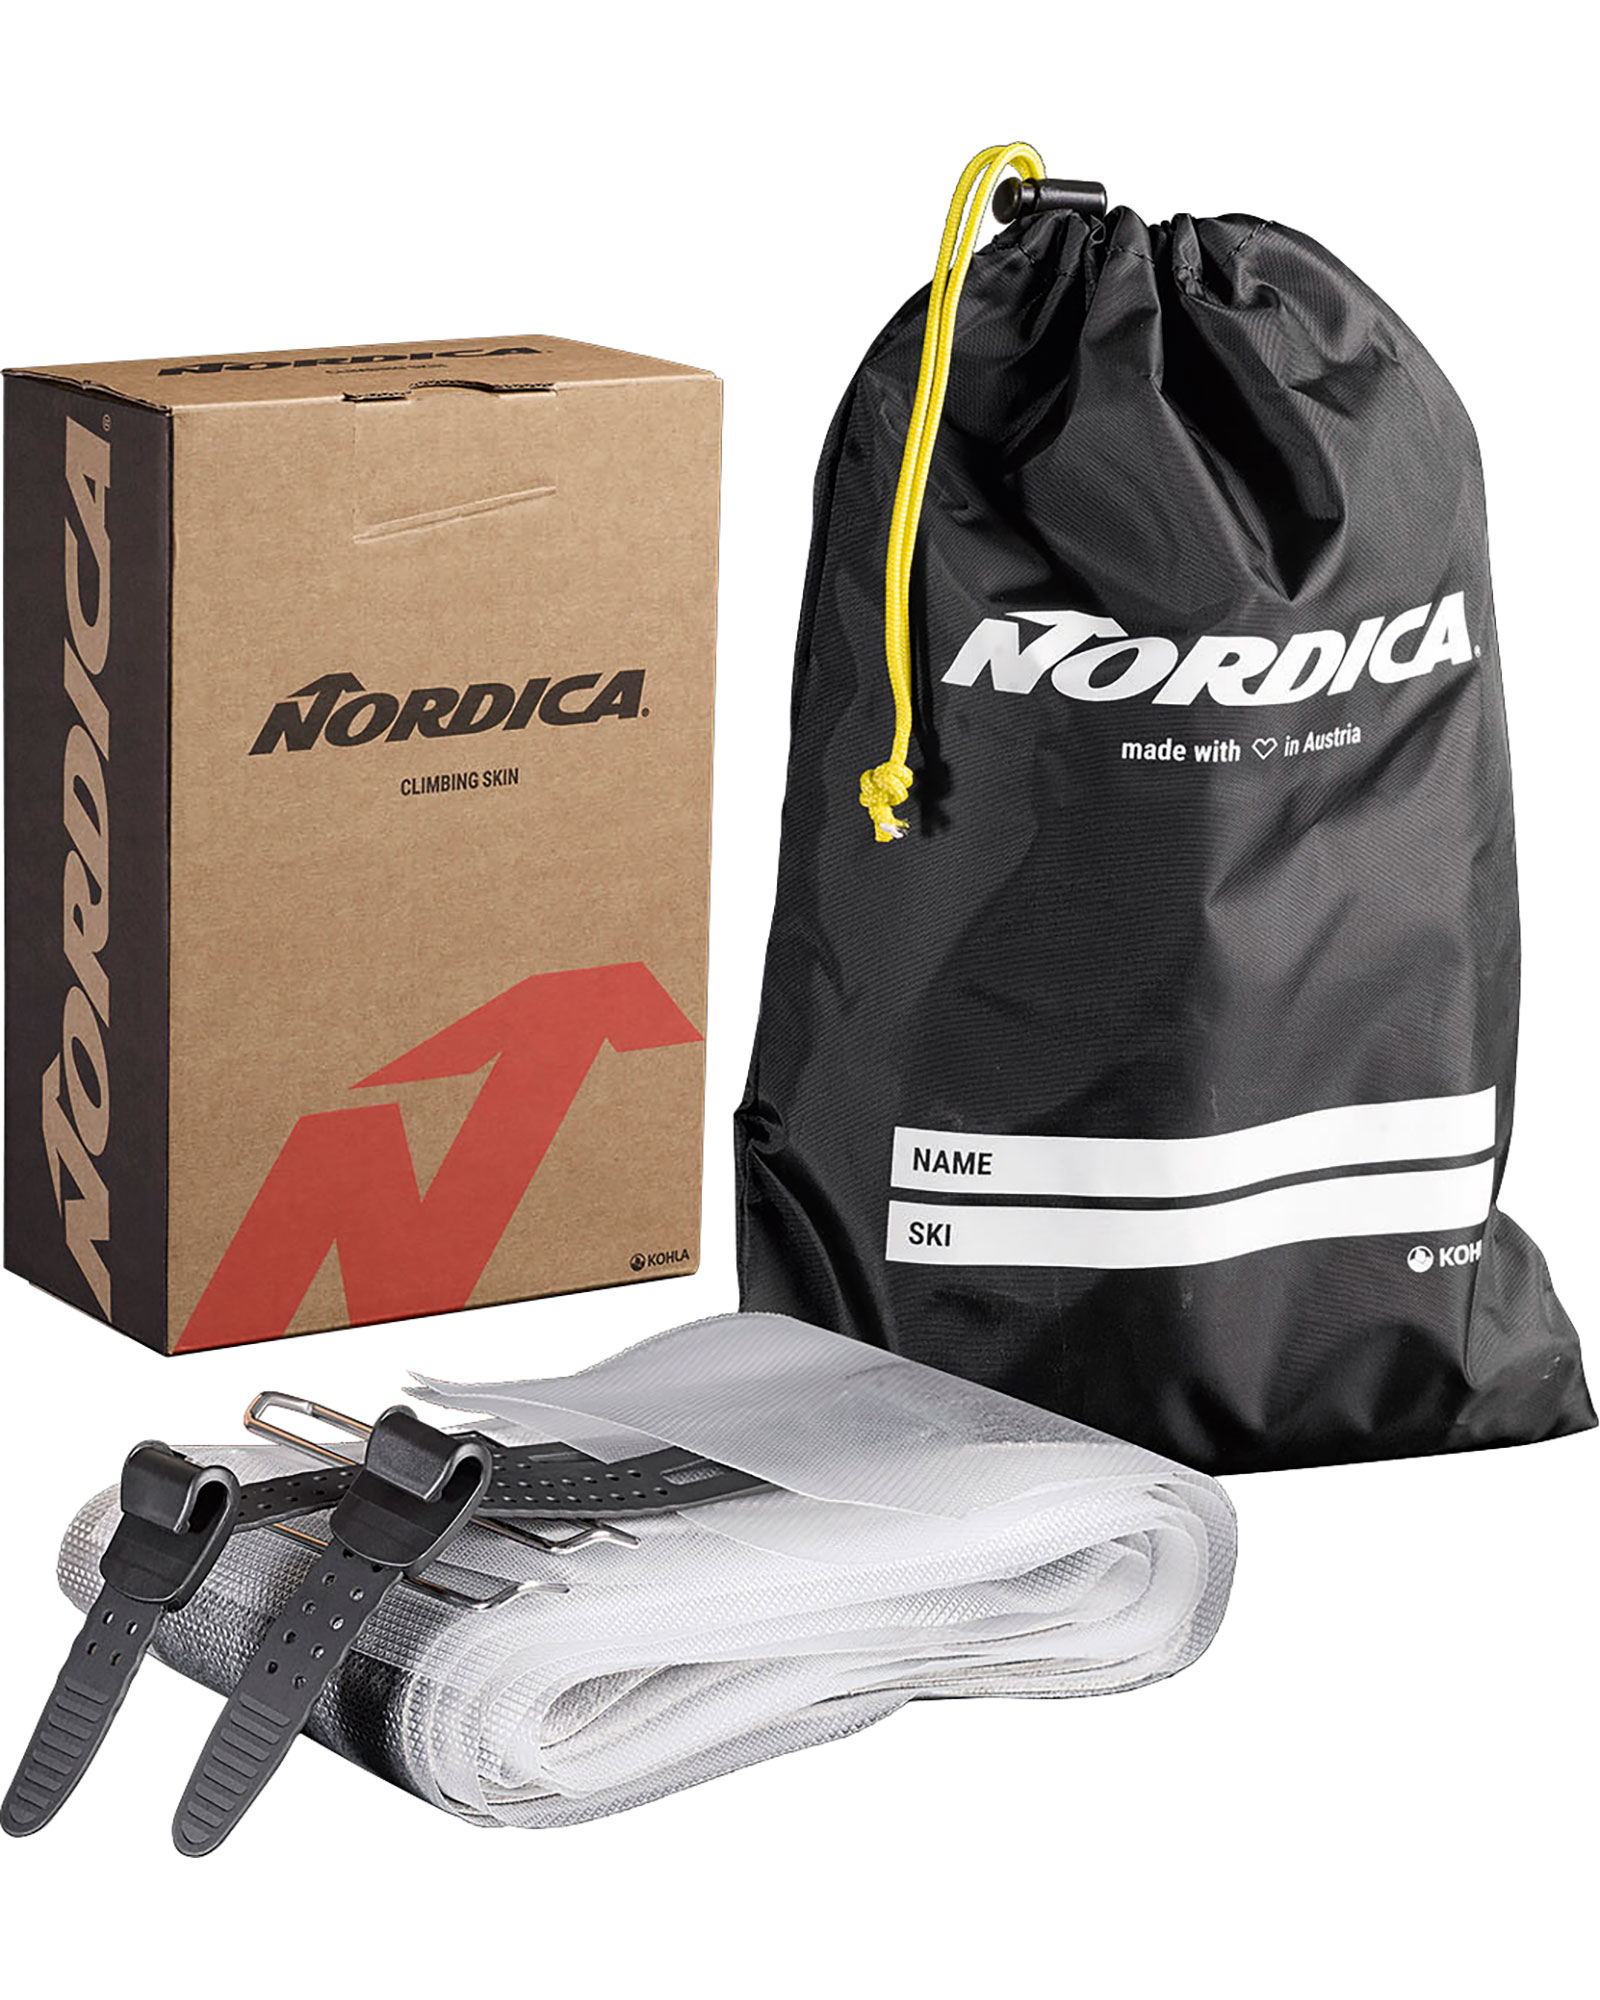 Nordica Enforcer / Santa Ana 88 Skins 165cm